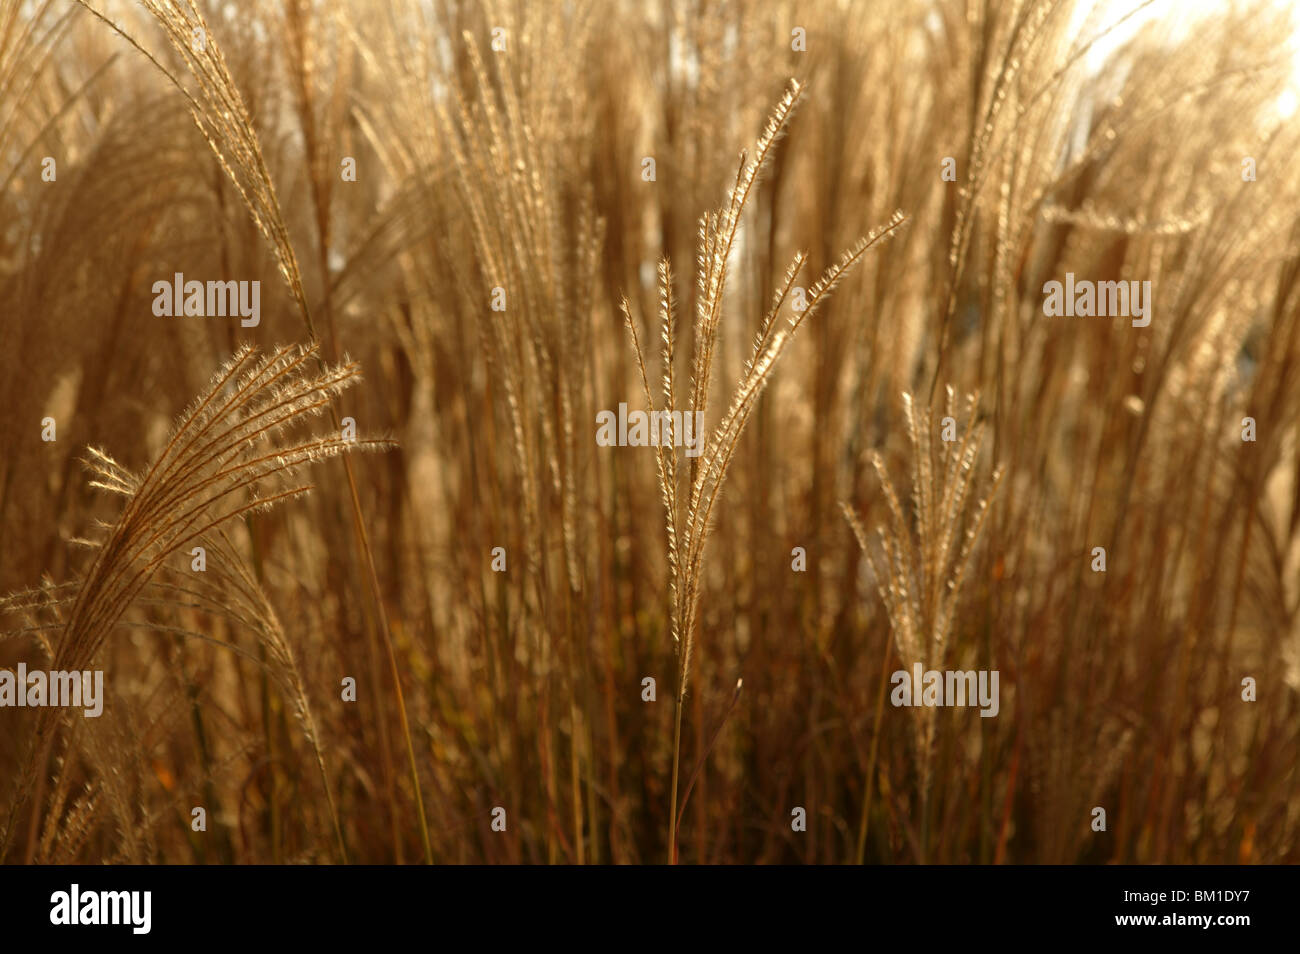 Golden spikes grass crop background pattern Stock Photo